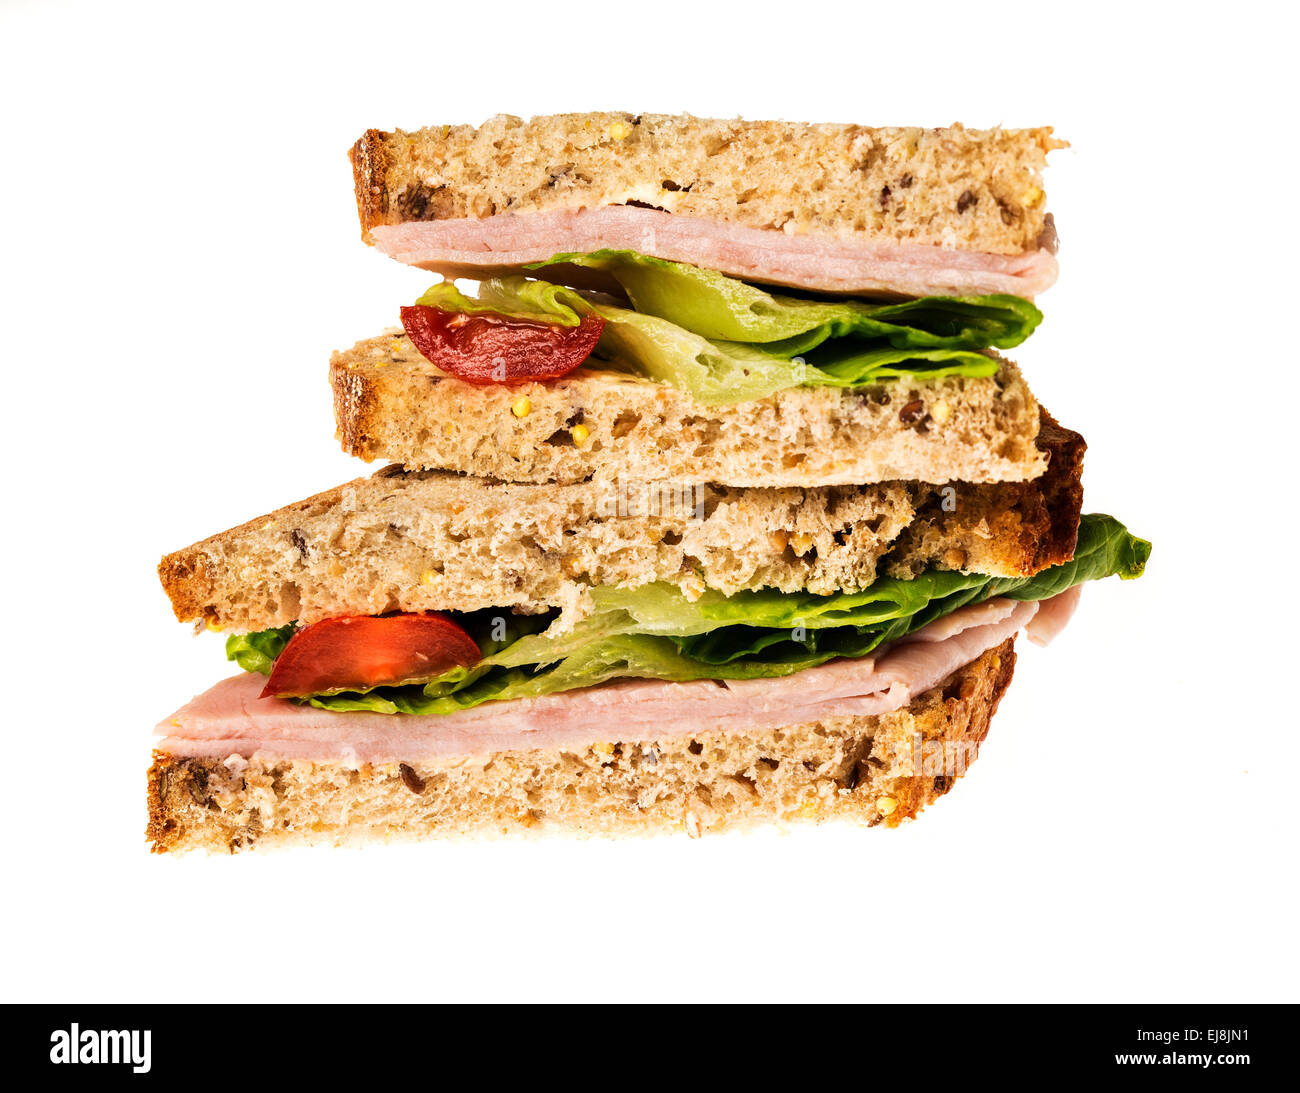 English multigrain bread ham sandwich Stock Photo